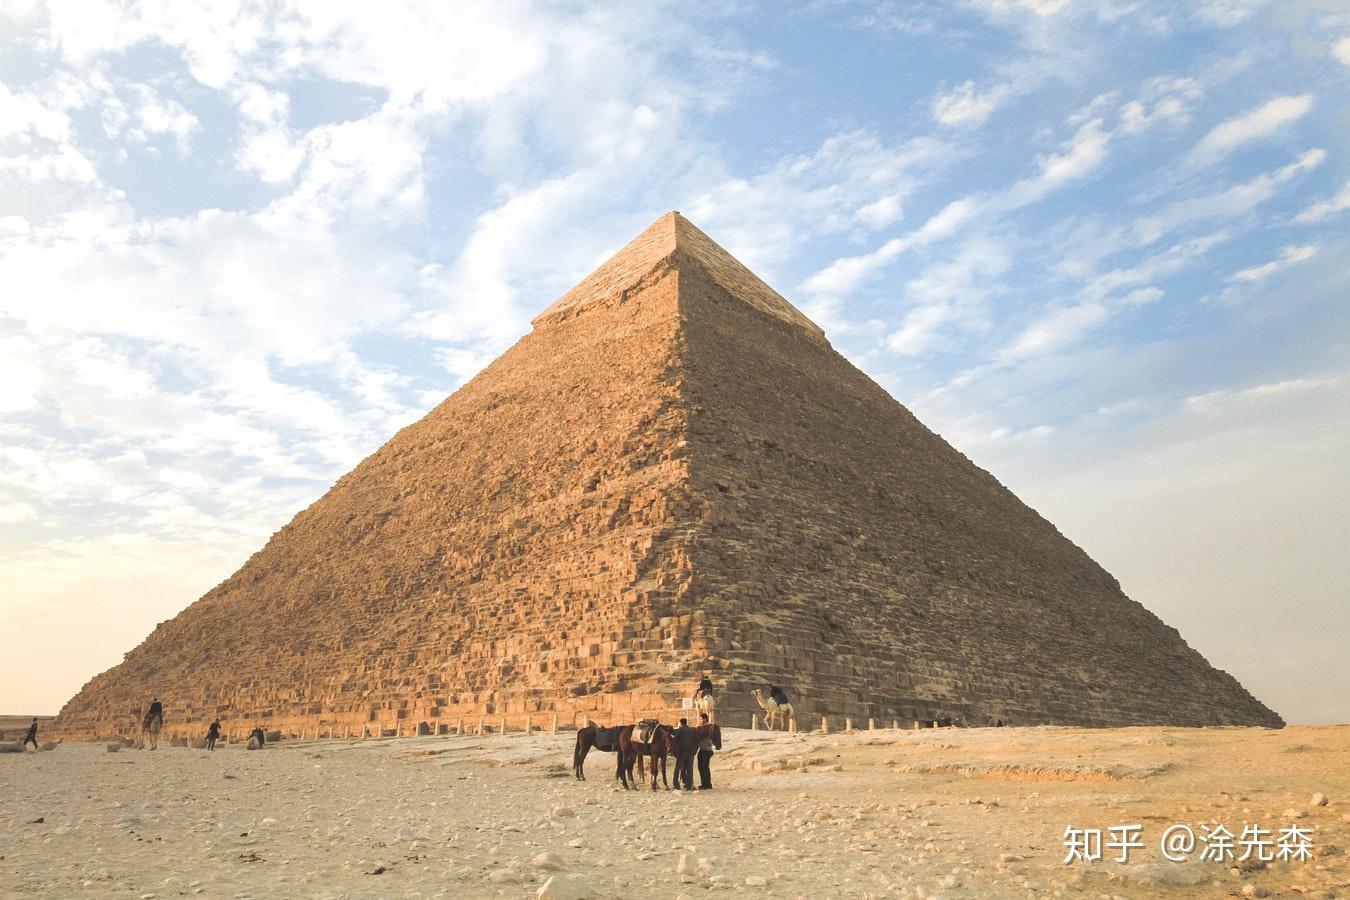 【携程攻略】开罗胡夫金字塔景点,到埃及必游景点，胡夫金字塔是最大最高的金字塔，也叫大金字塔。但由…